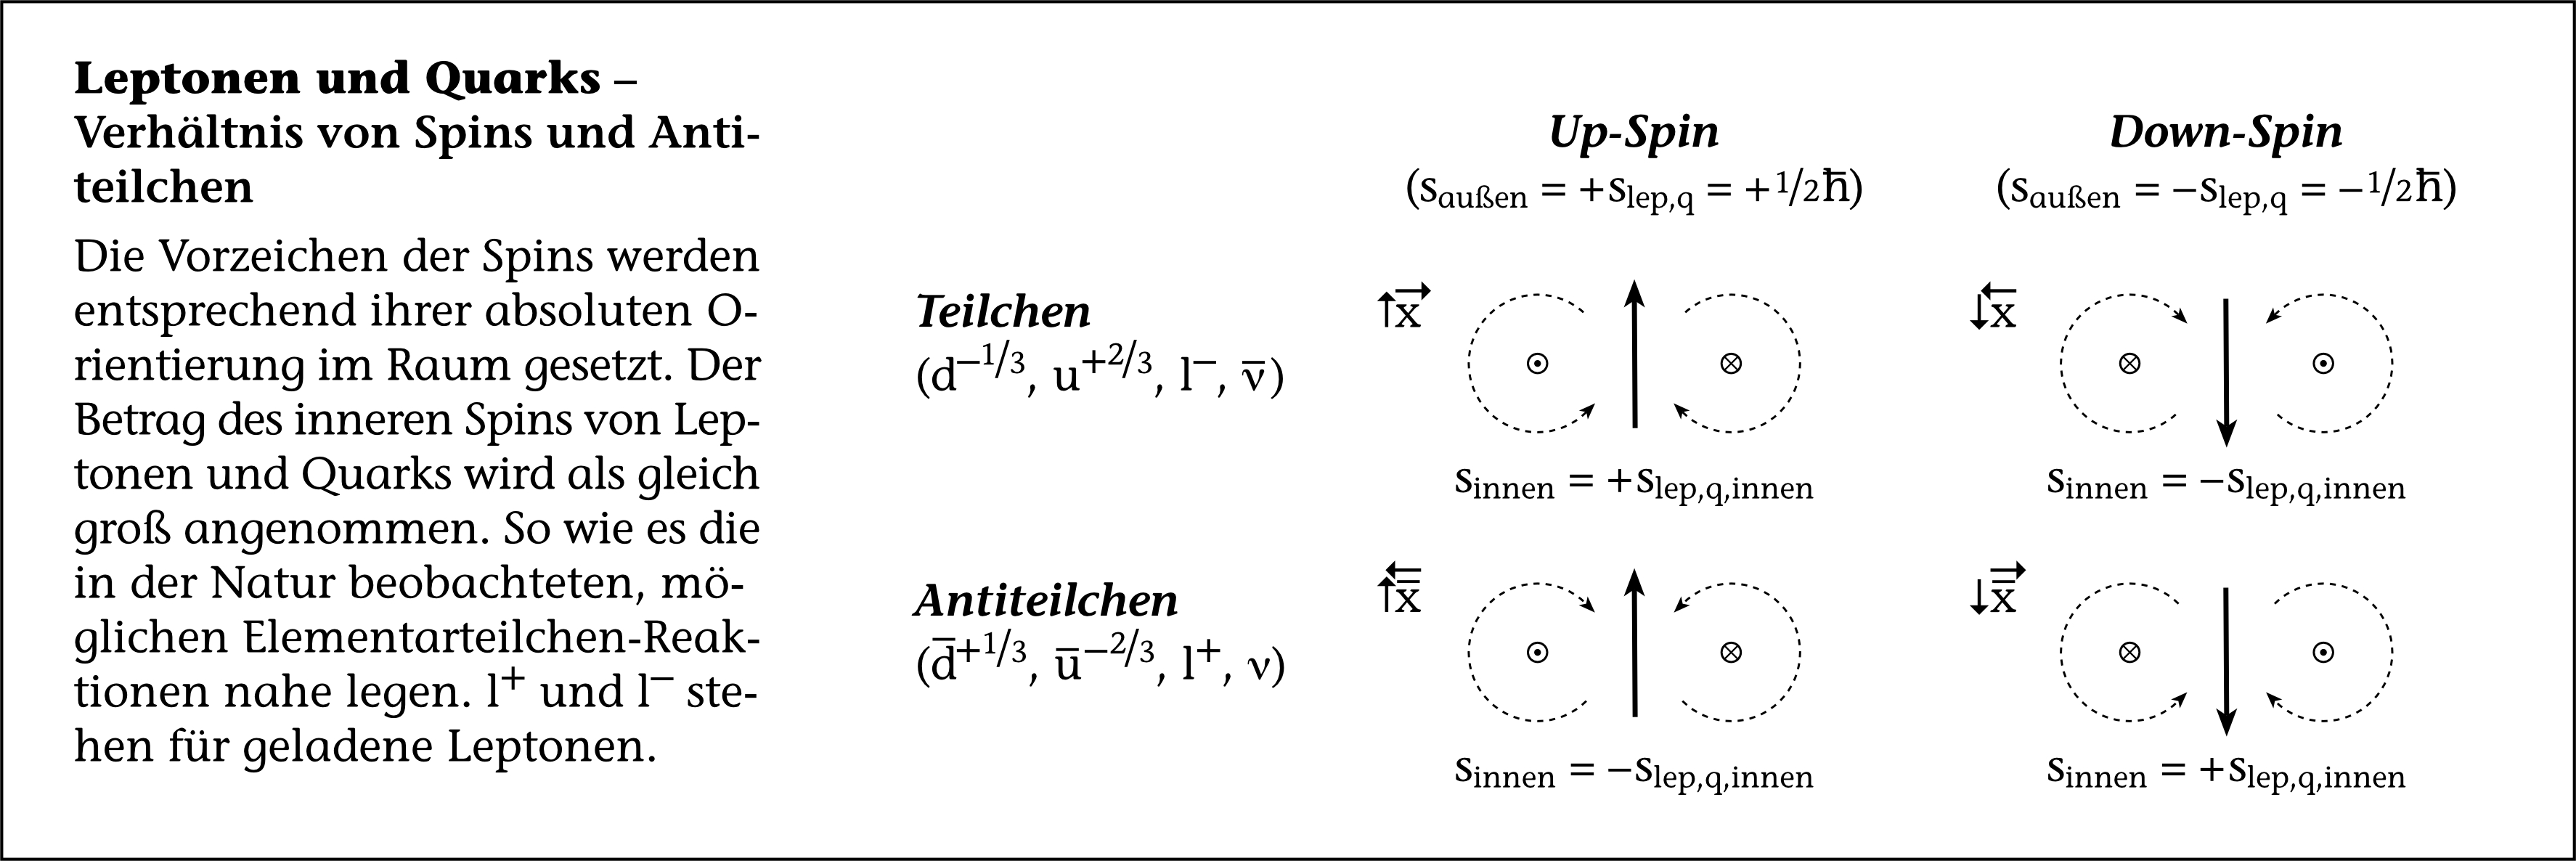 Leptonen und Quarks - Verhältnis von Spins und Antiteilchen